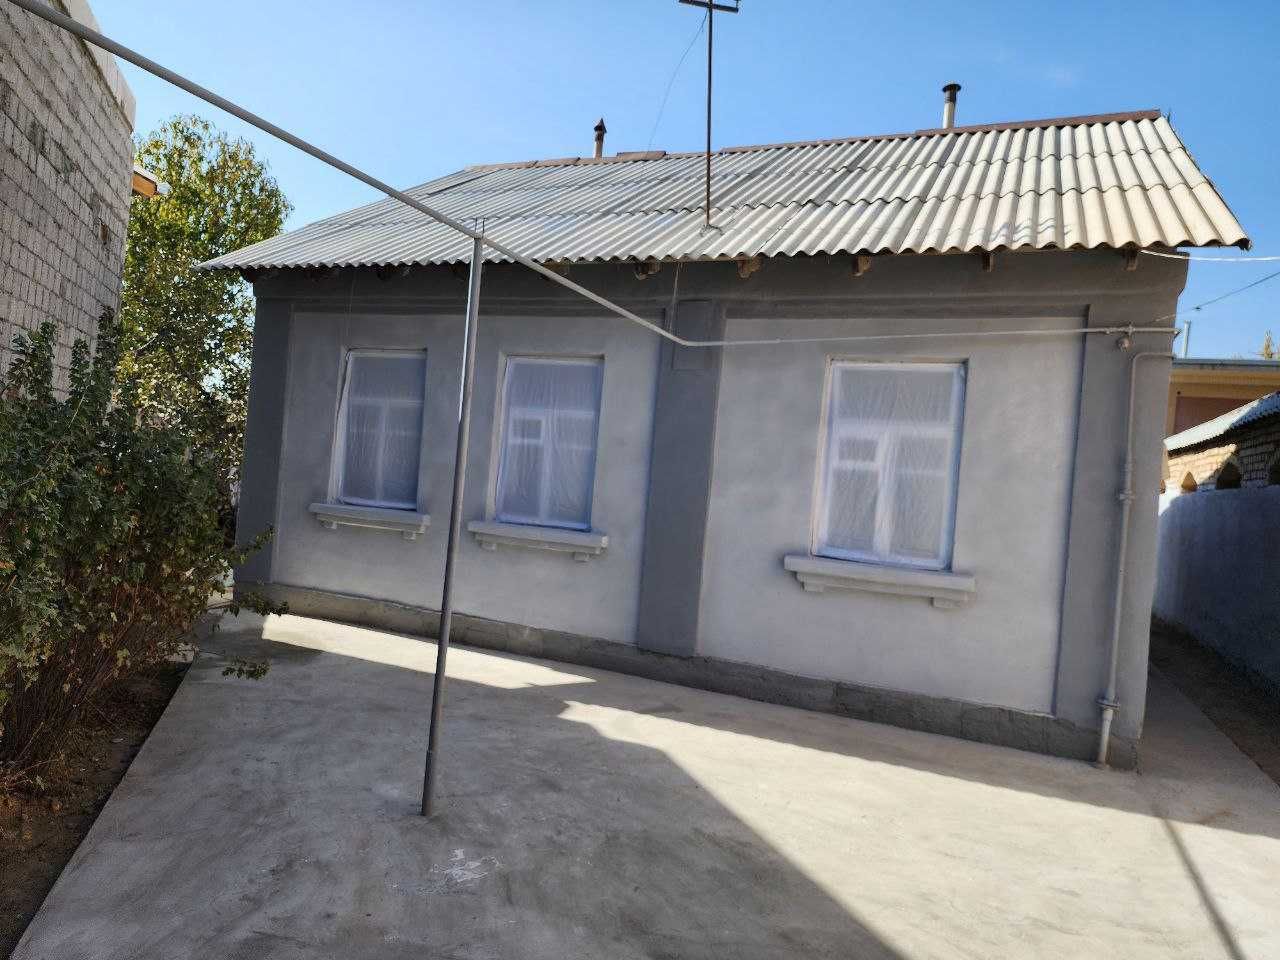 Продается  дом в Янгиюле 5 соток  около Горгаза недоходя ул Чарикова